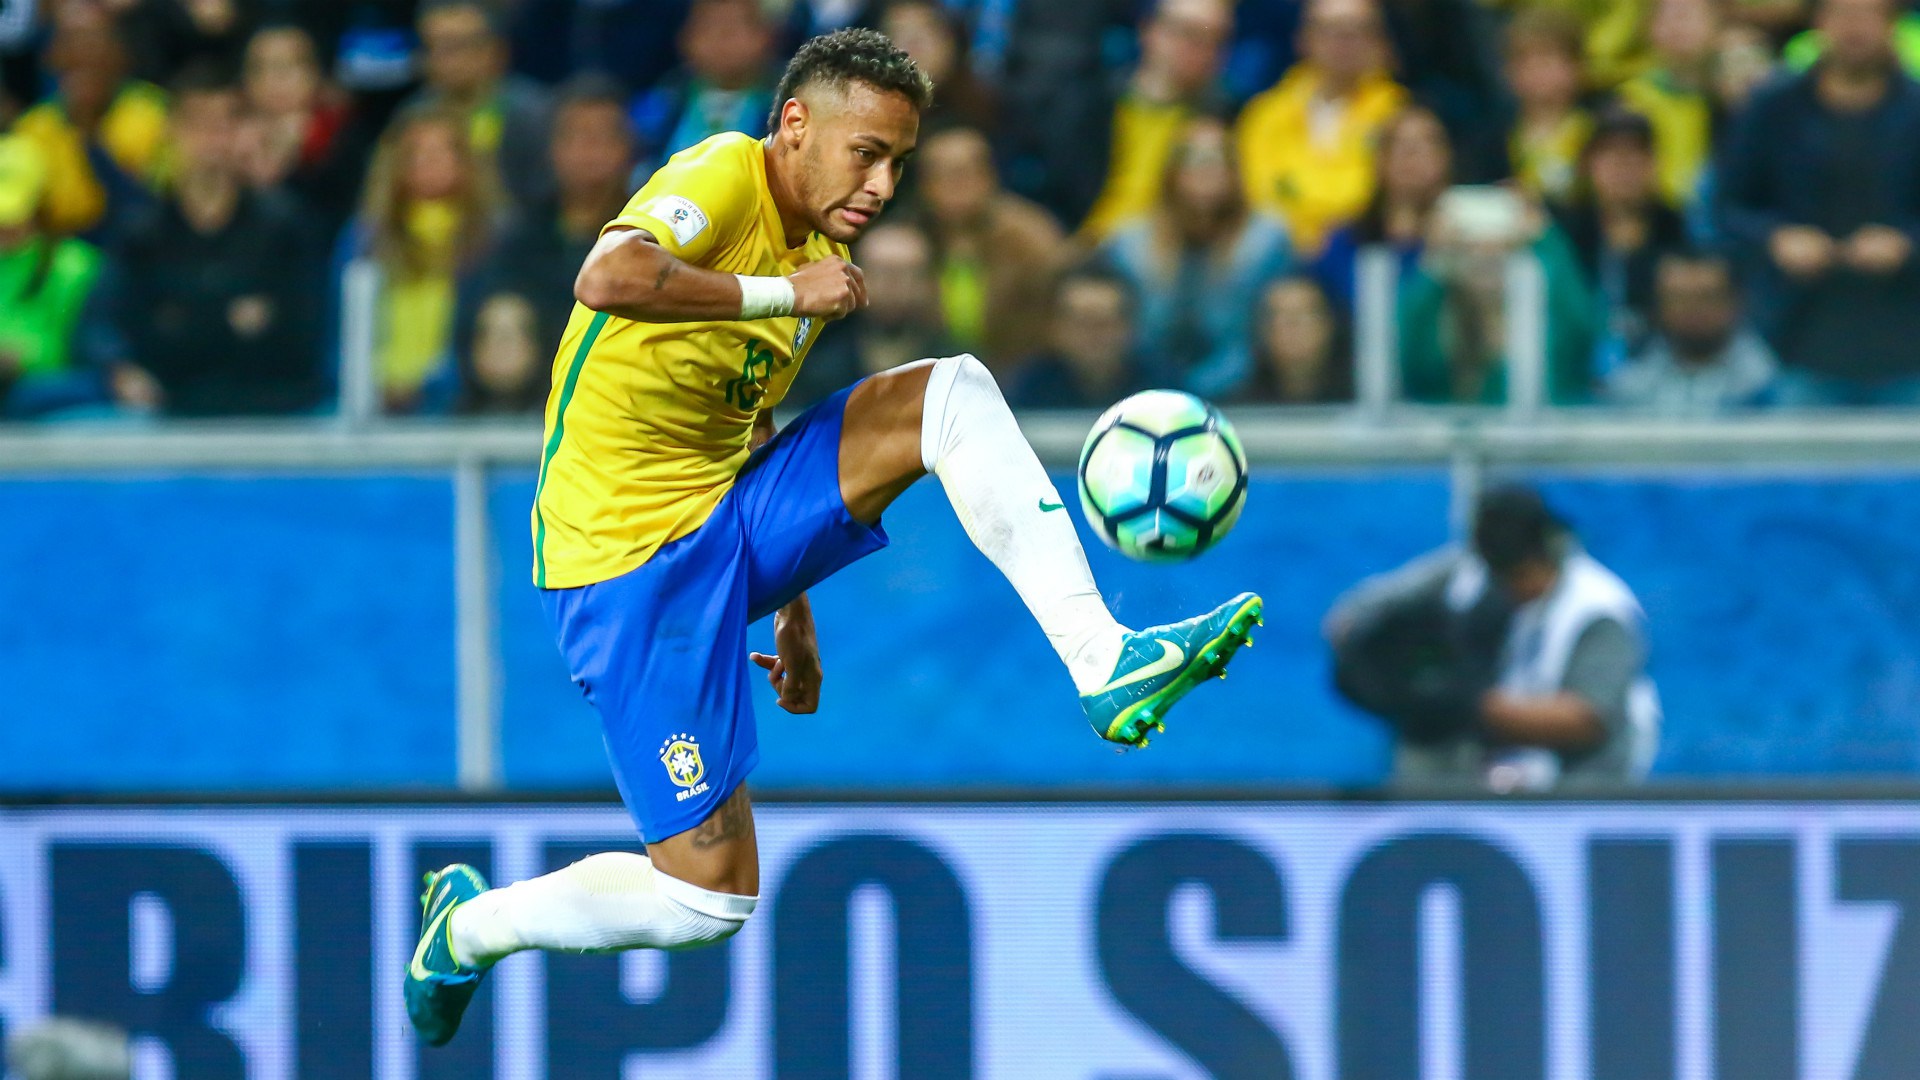 Neymar Wallpaper - Brazil Football Team 2018 , HD Wallpaper & Backgrounds